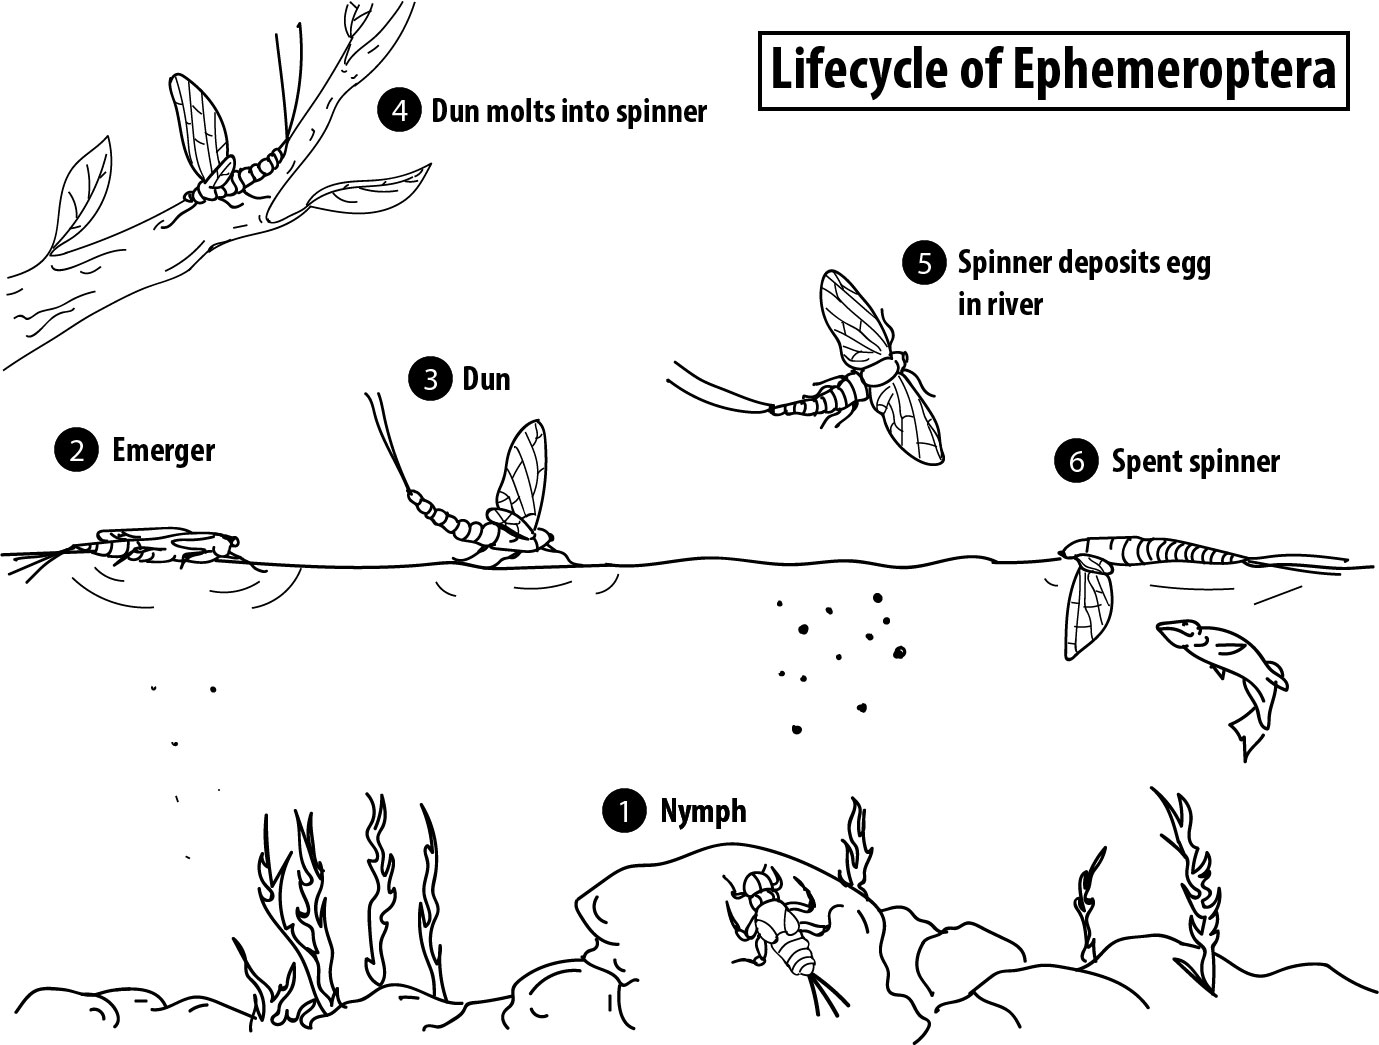 Figure 2-1: Lifecycle of ephemeroptera.